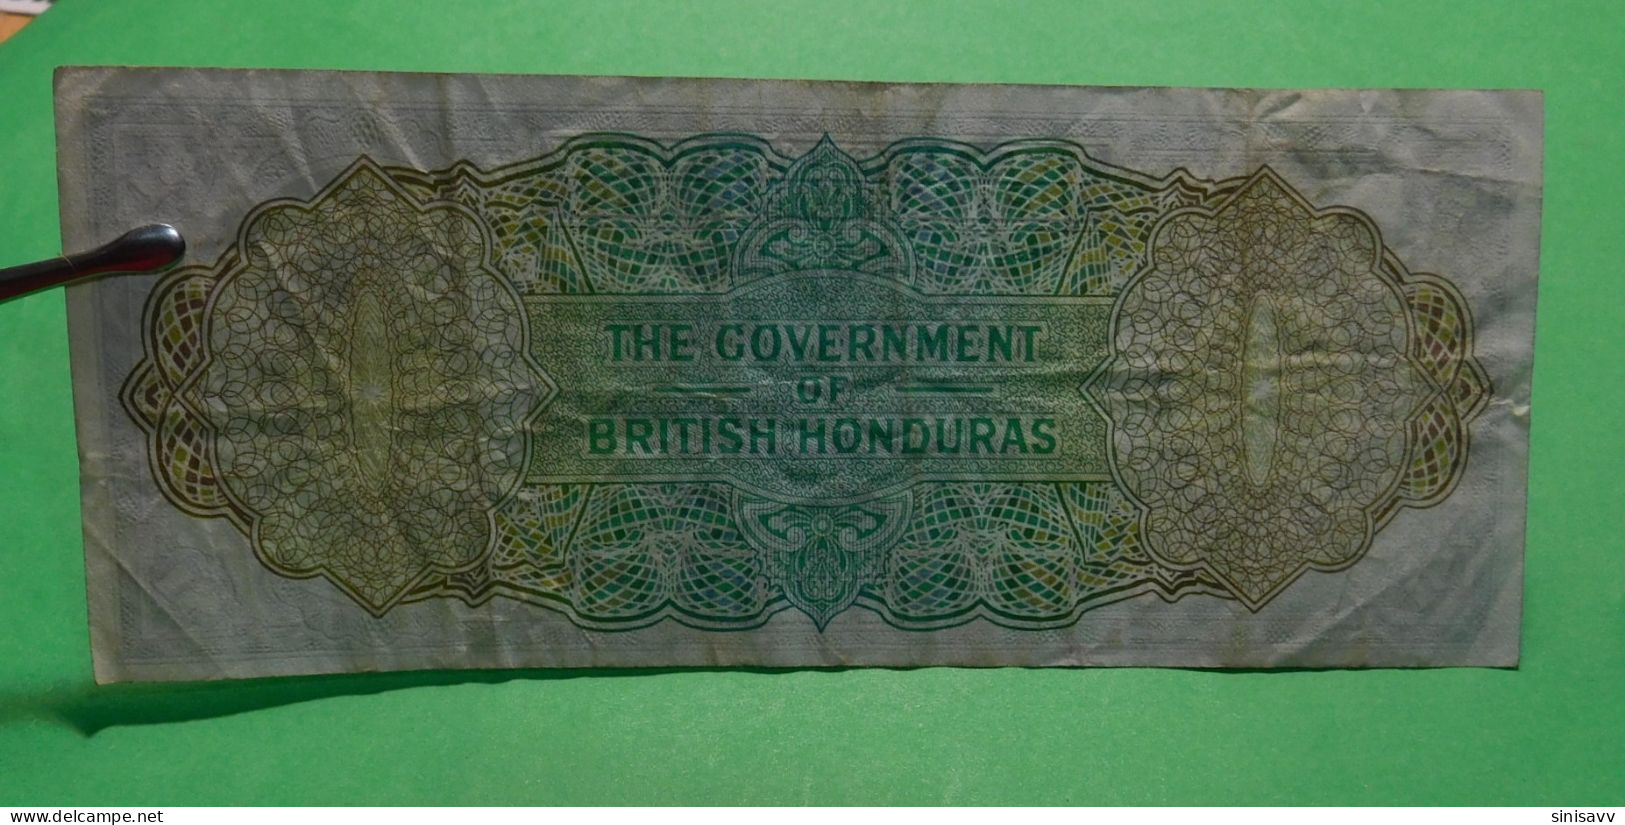 British Honduras 1 Dollar 1972 - rare